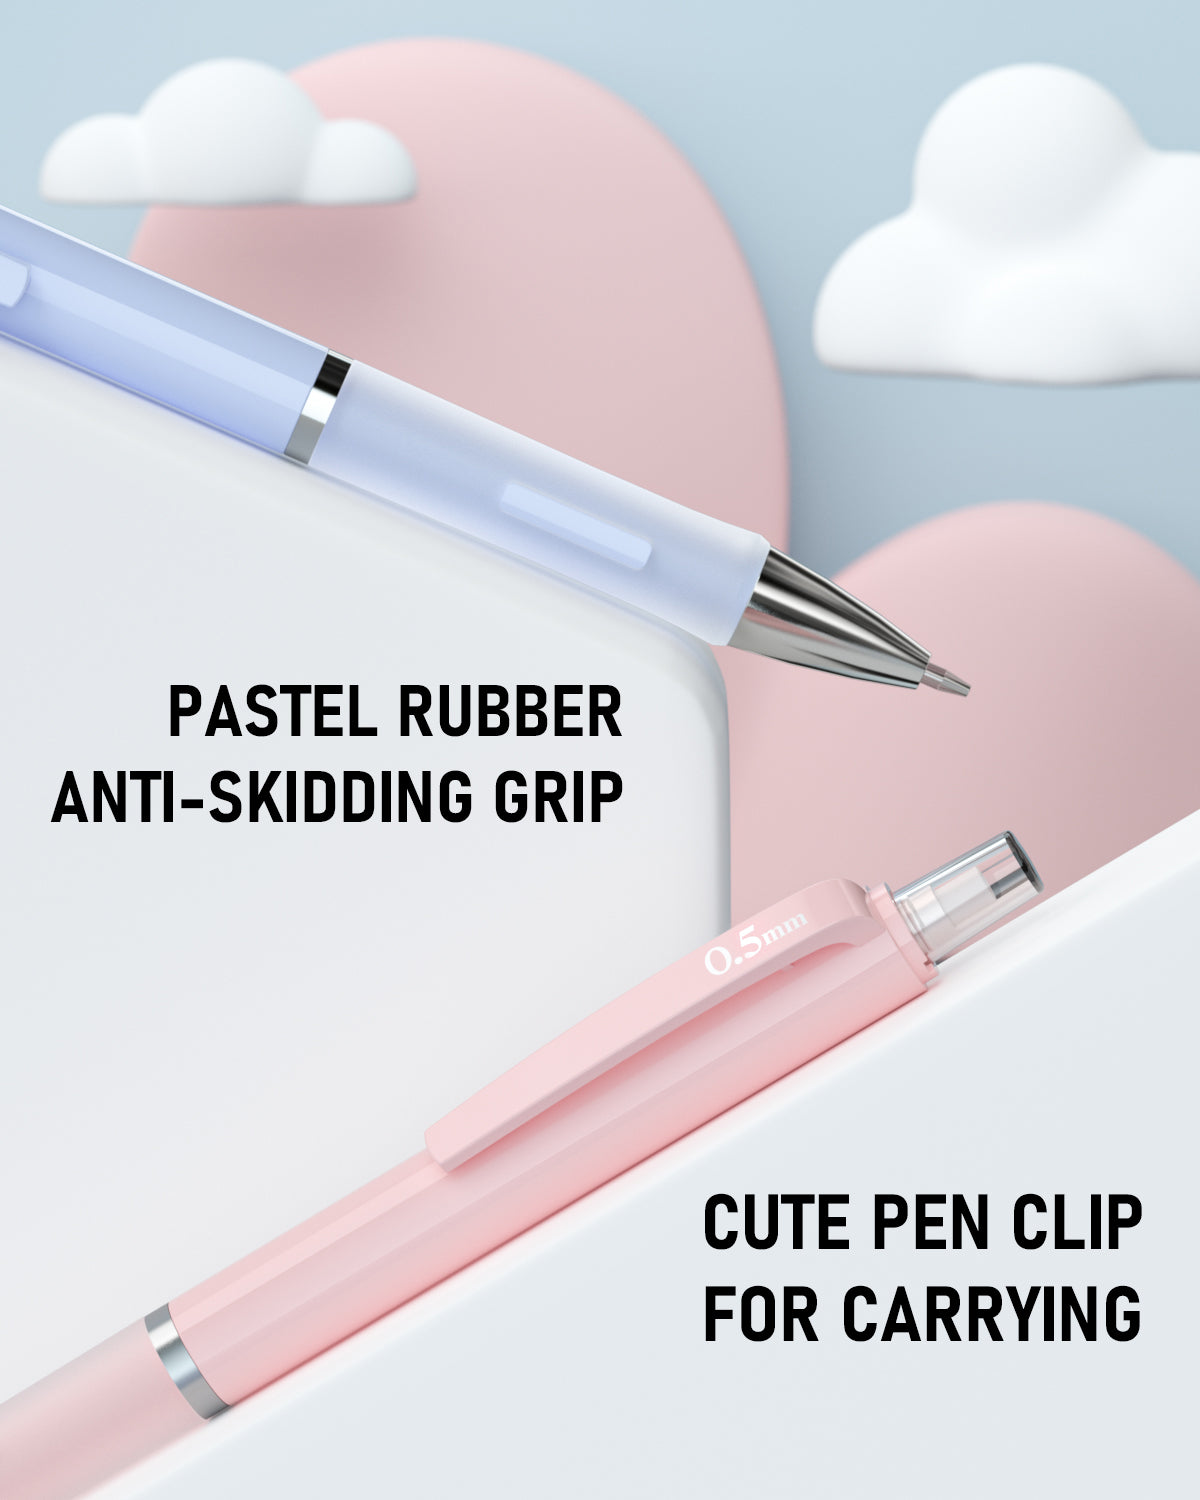 Mr. Pen- Retractable Mechanical Eraser Pen, Pack of 4, Assorted Colors, Pencil Eraser, Eraser for Pencils, Retractable Eraser, Eraser for Artists